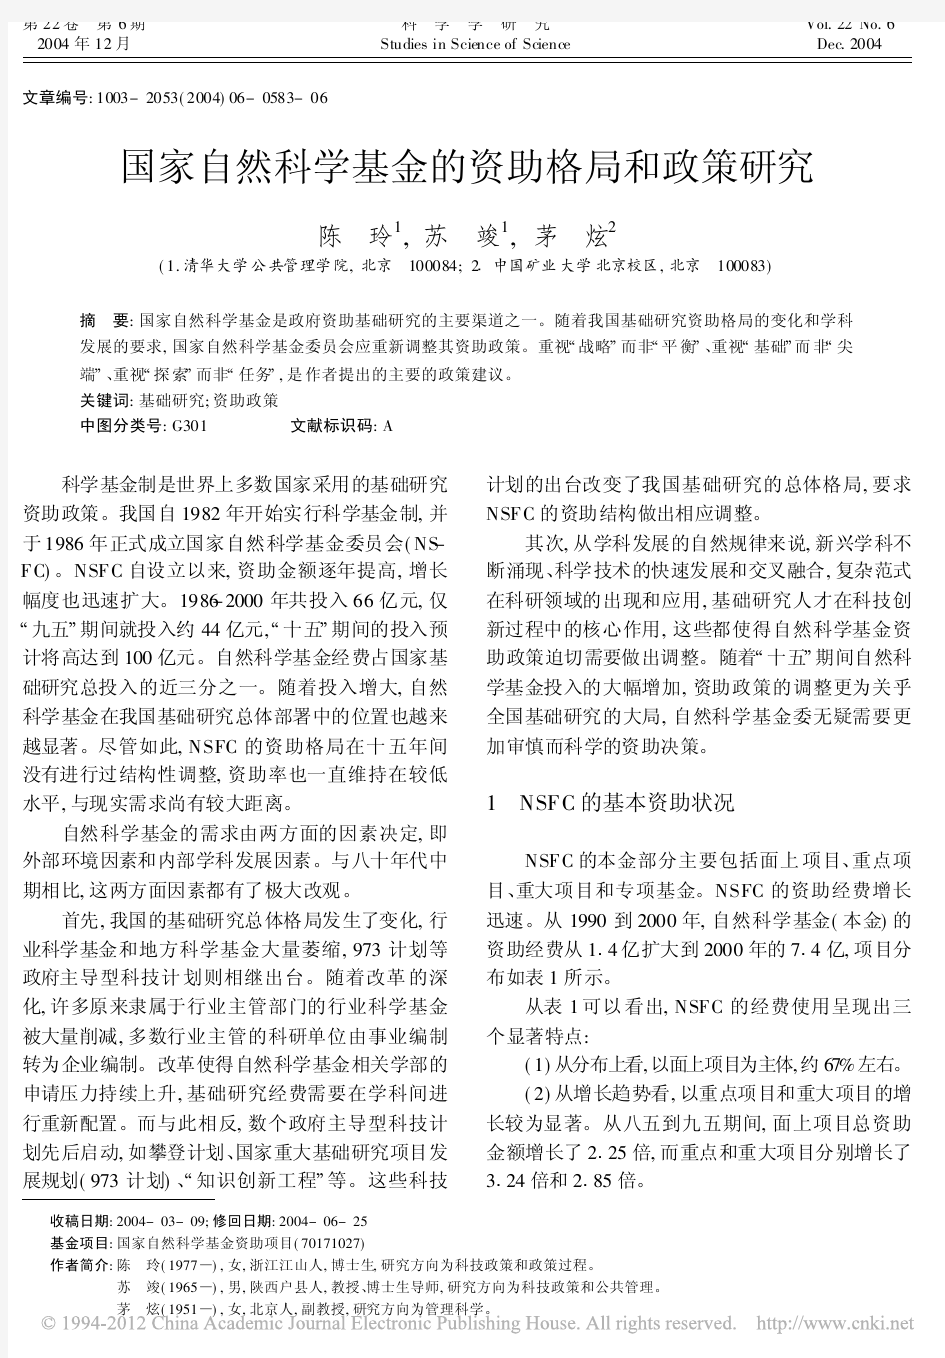 陈玲(2004)：国家自然科学基金的资助格局和政策研究